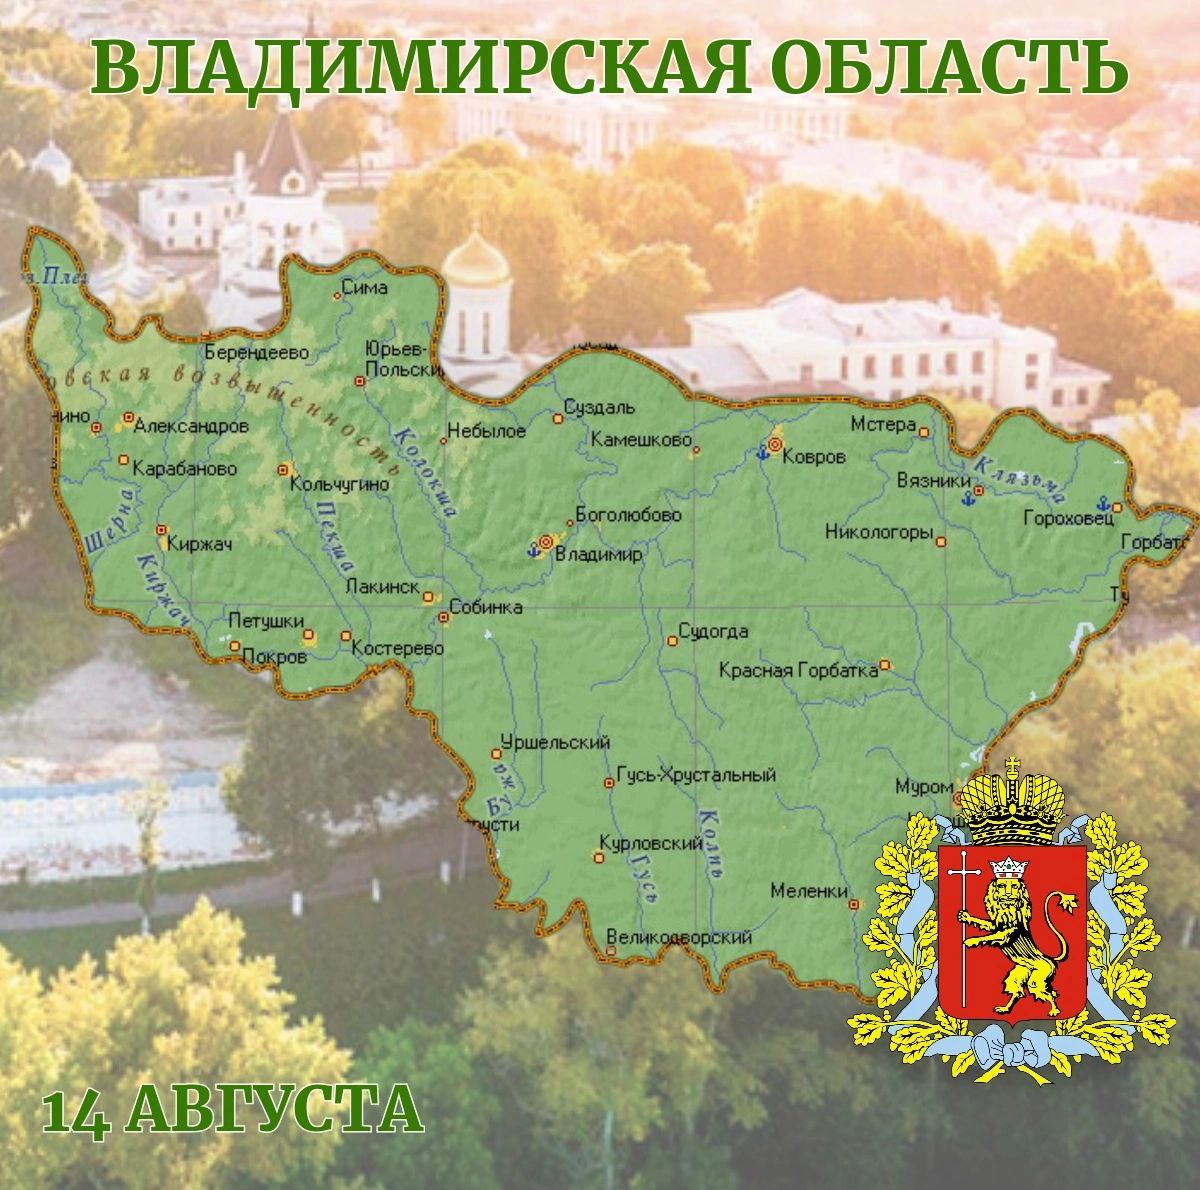 Сегодня Владимирская область отмечает свой 78 день рождения